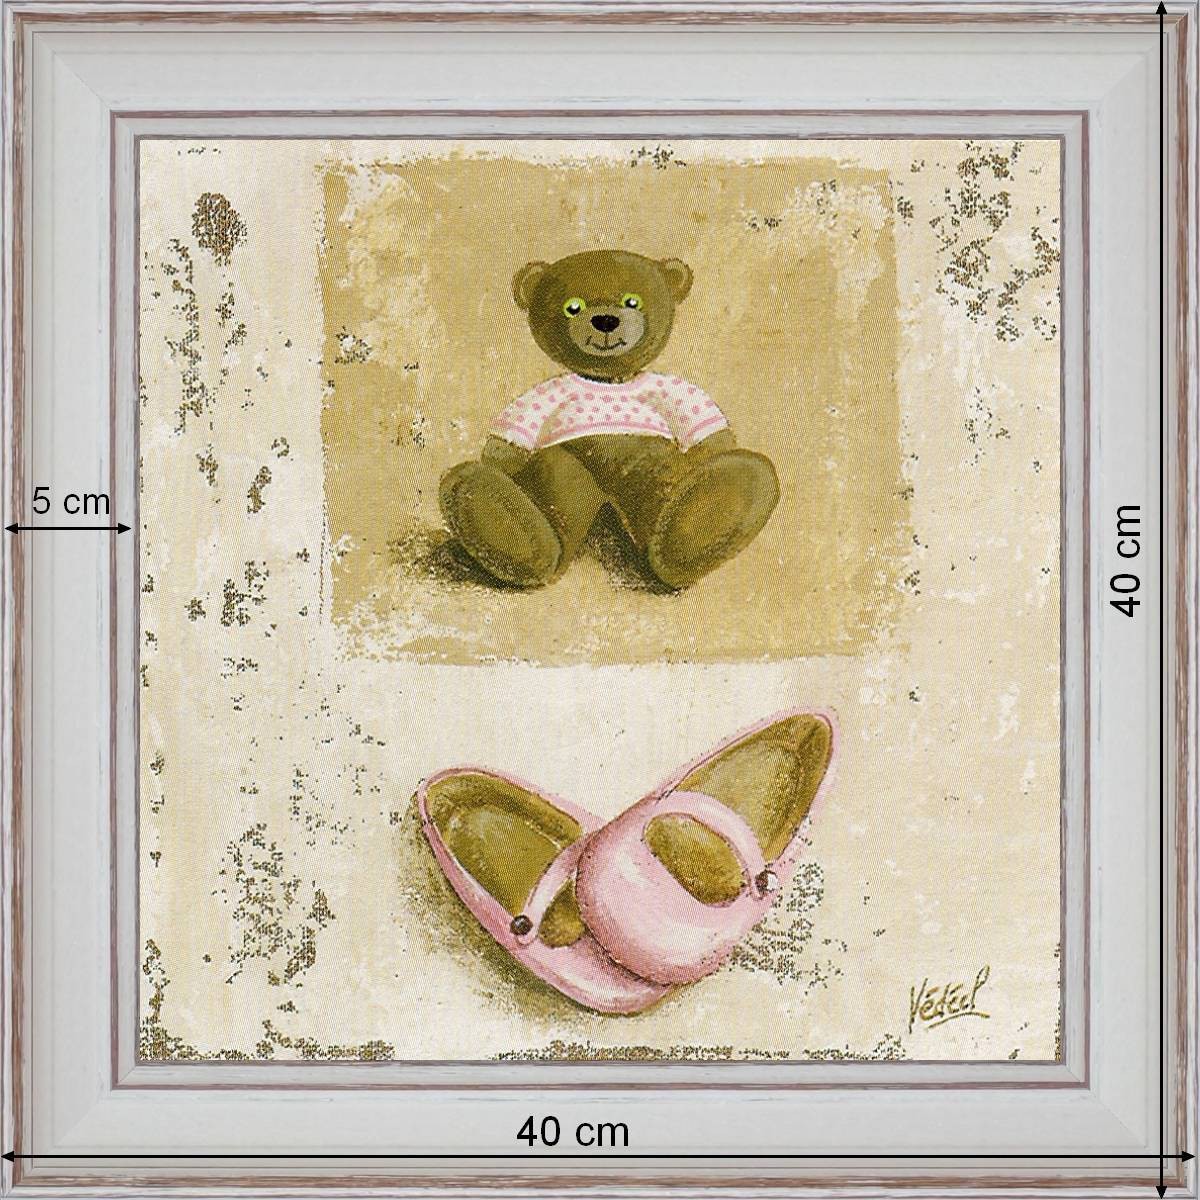 Nounours rose et chaussures - dimensions 40 x 40 cm